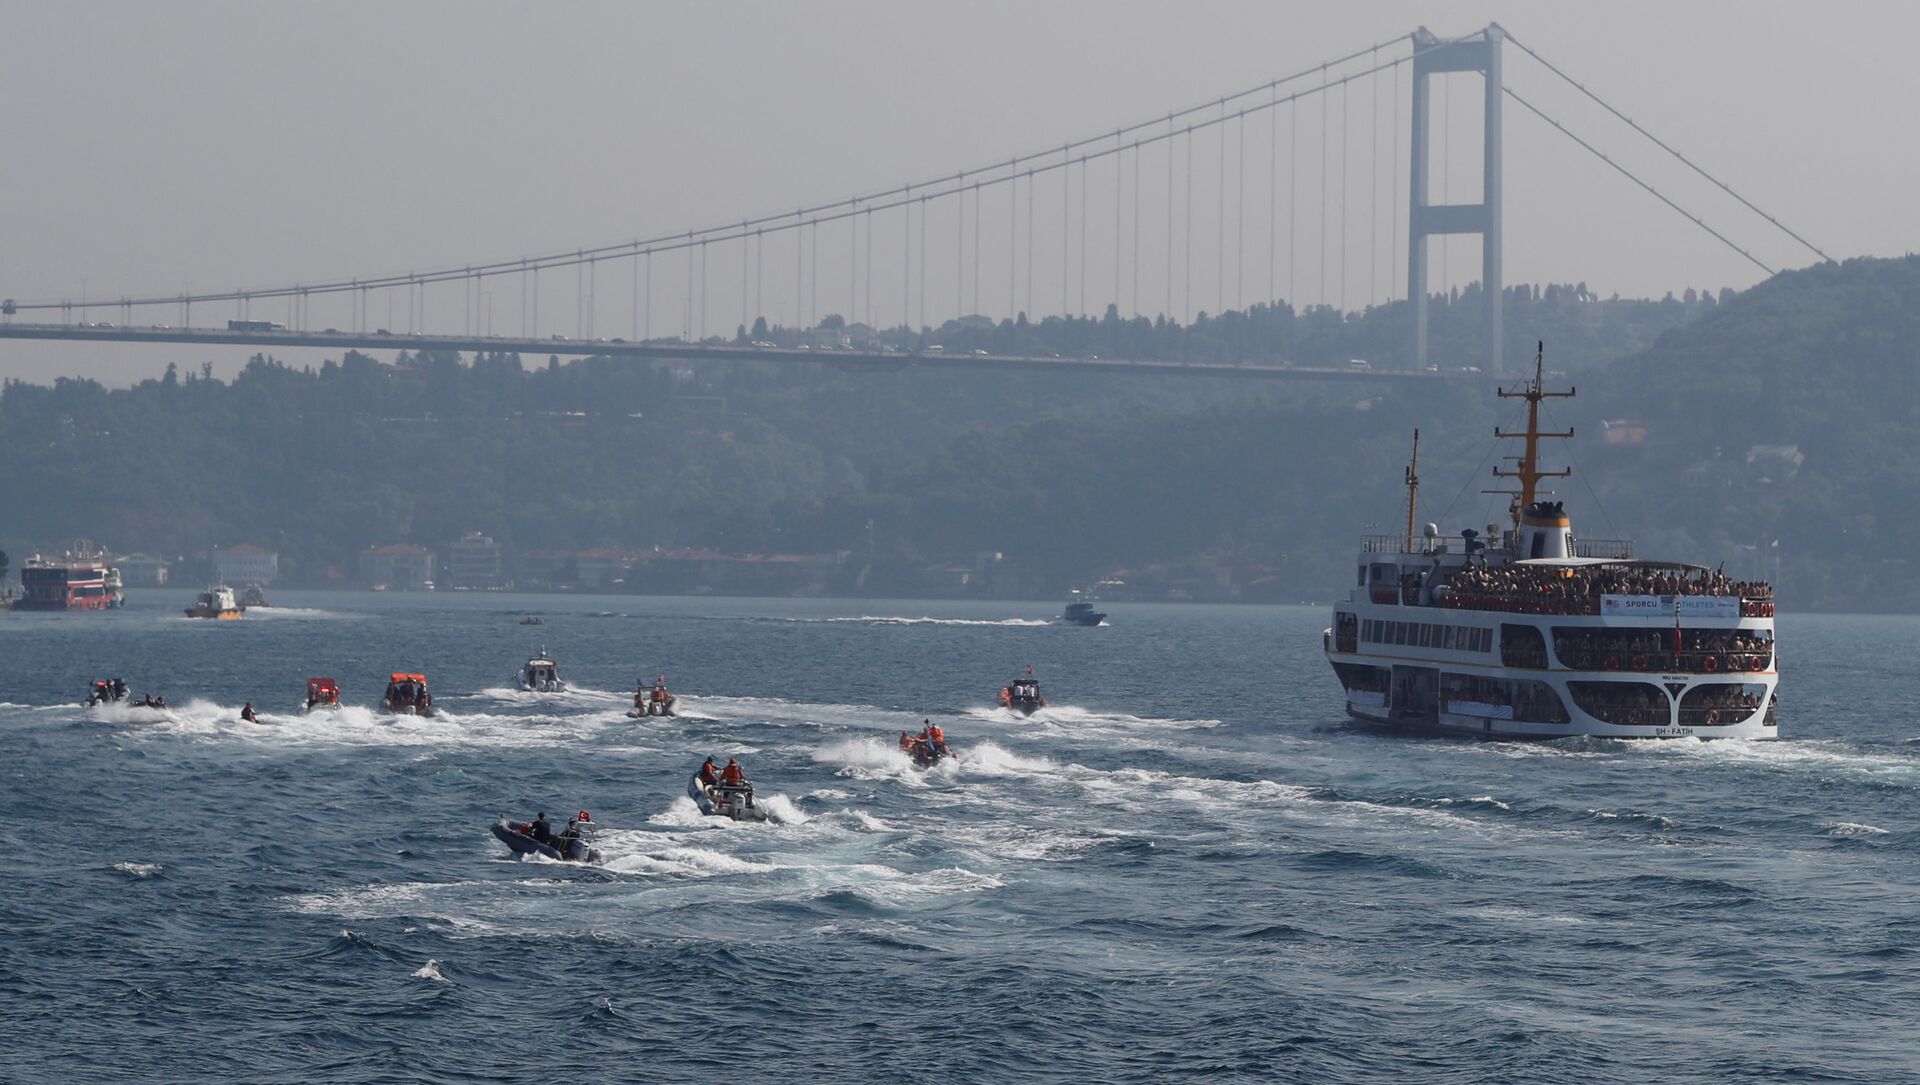 Участники межконтинентального заплыва через Босфор в Стамбуле - Sputnik Србија, 1920, 05.04.2021